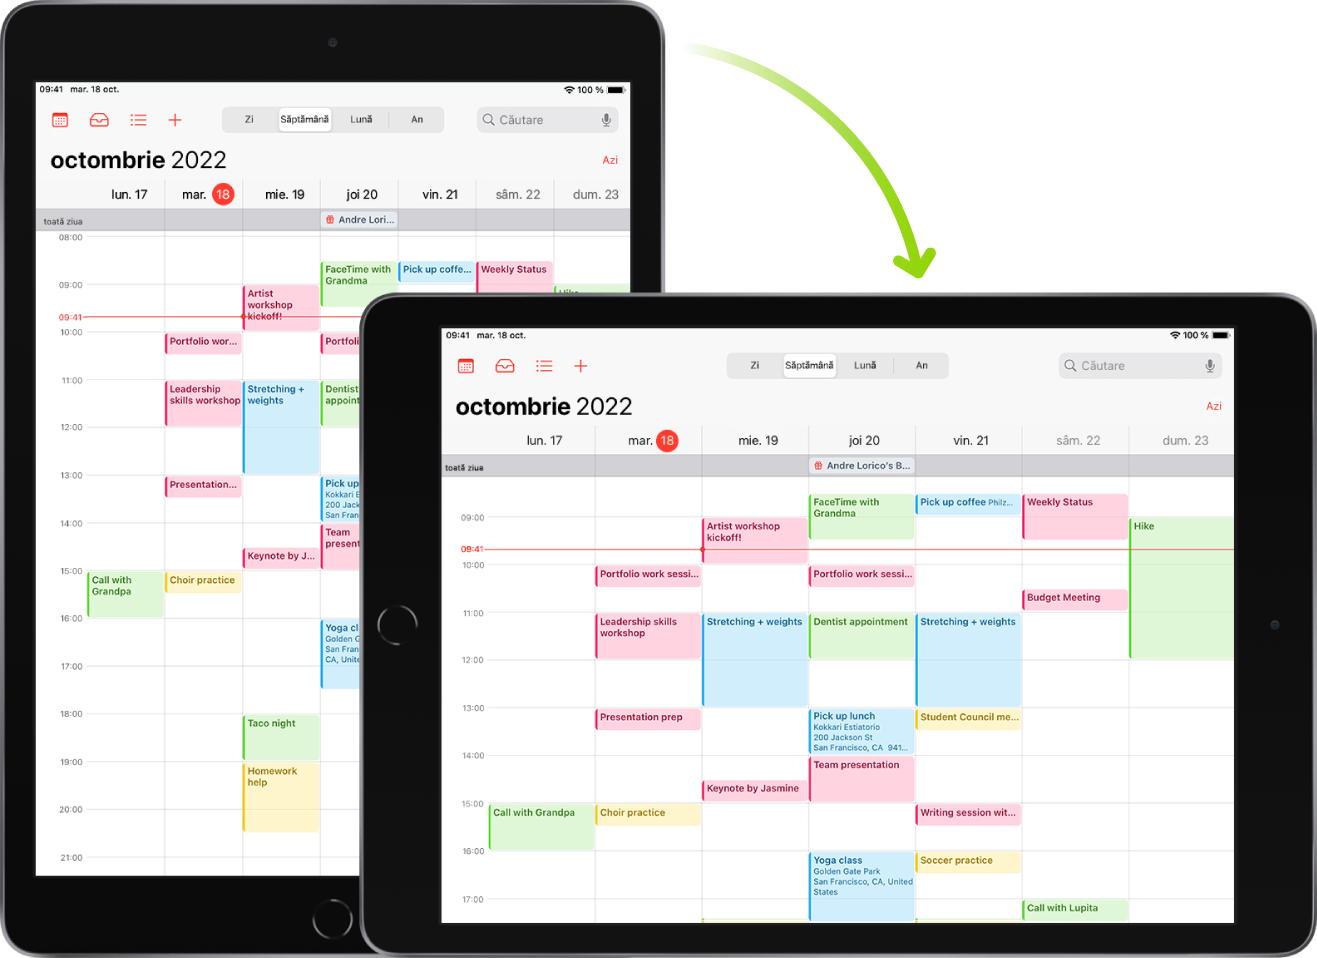 În fundal, iPad-ul afișează un ecran Calendar în orientarea portret; în prim-plan, iPad-ul este rotit și afișează ecranul Calendar în orientarea peisaj.